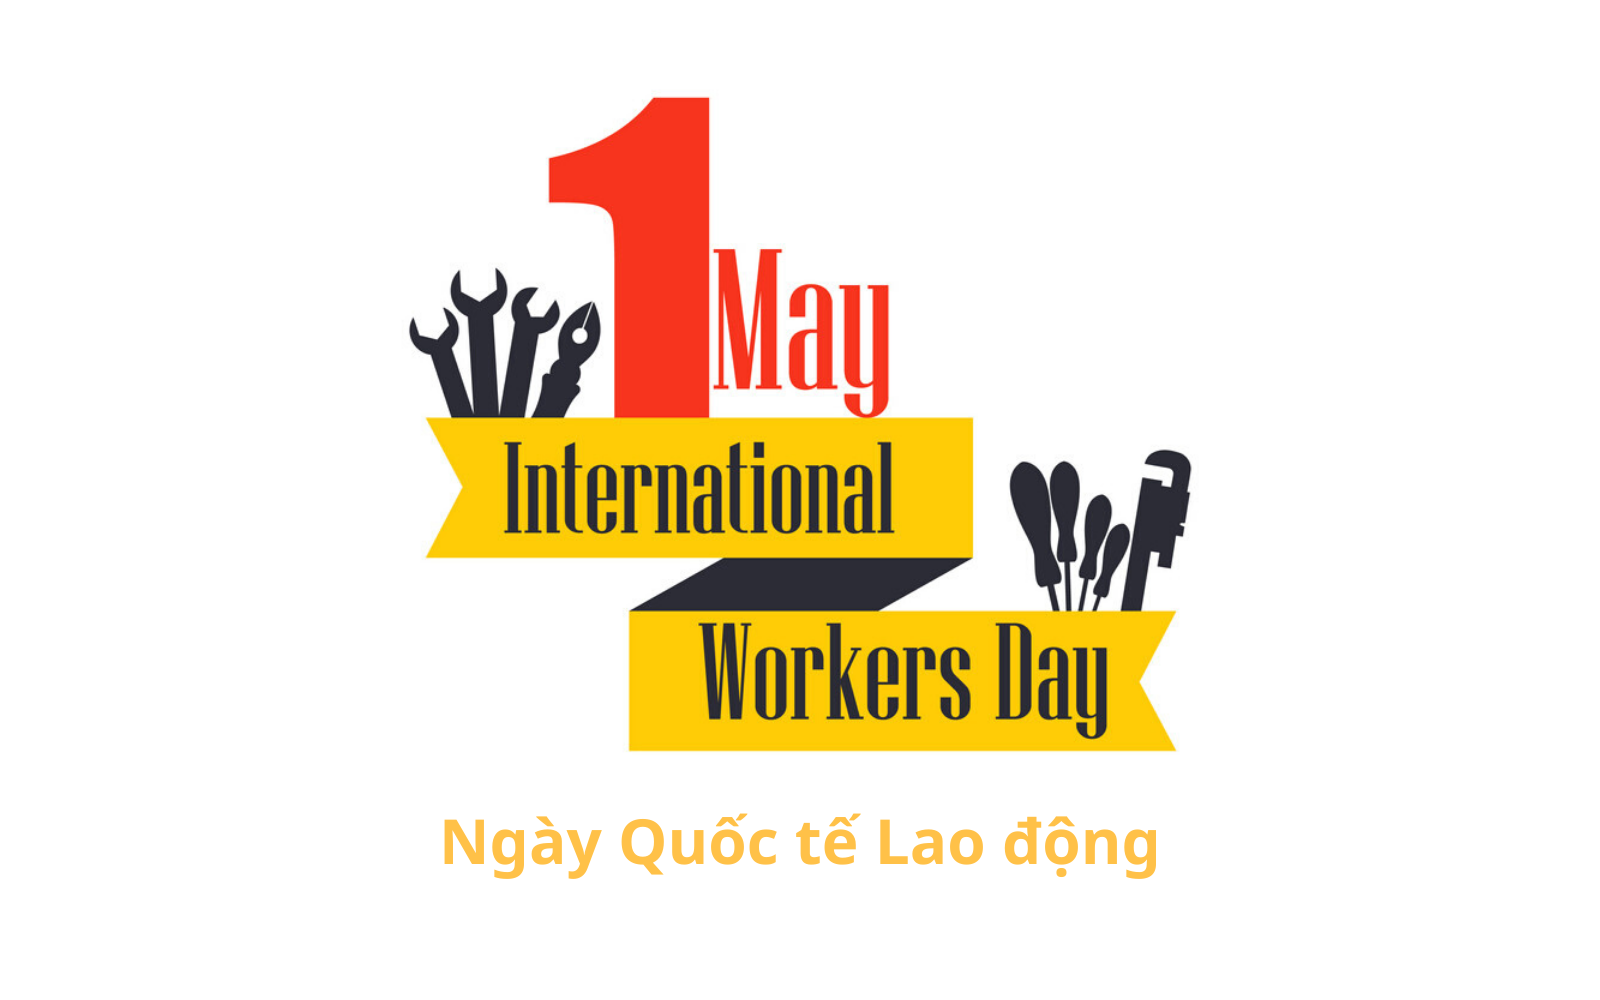 Ngày Quốc tế Lao động (International Workers' Day) là gì? Ý nghĩa và lịch sử hình thành